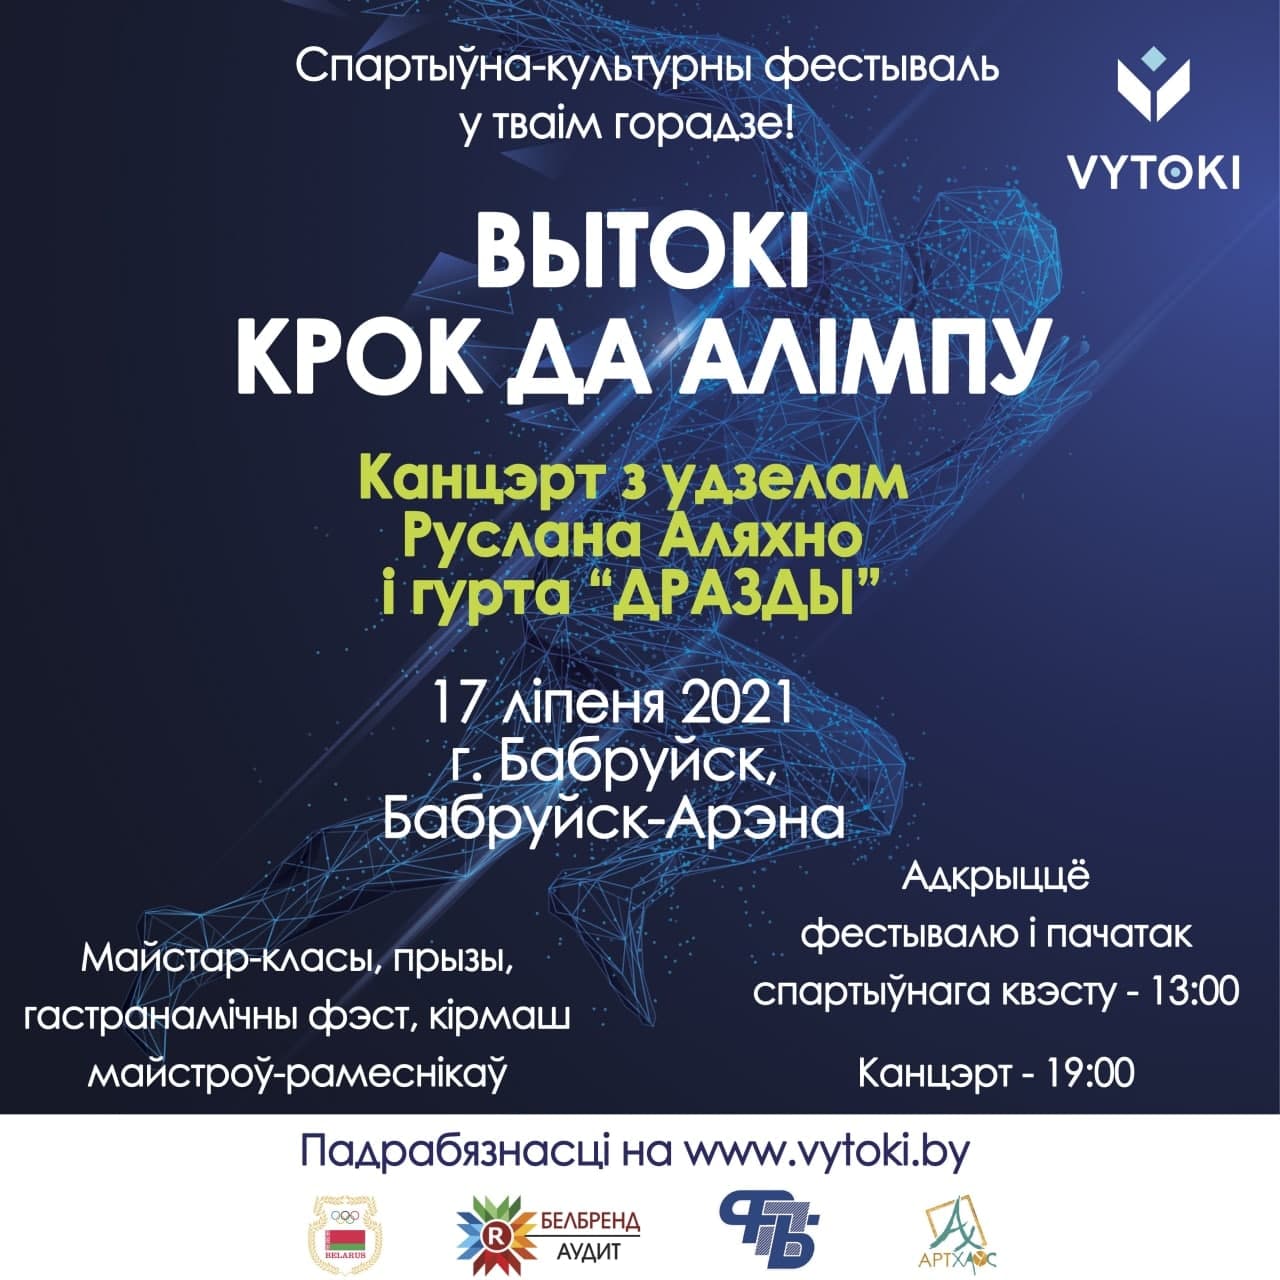 Бобруйск, встречай! 15-17 июля пройдет фестиваль «Вытокi. Крок да Алiмпу»